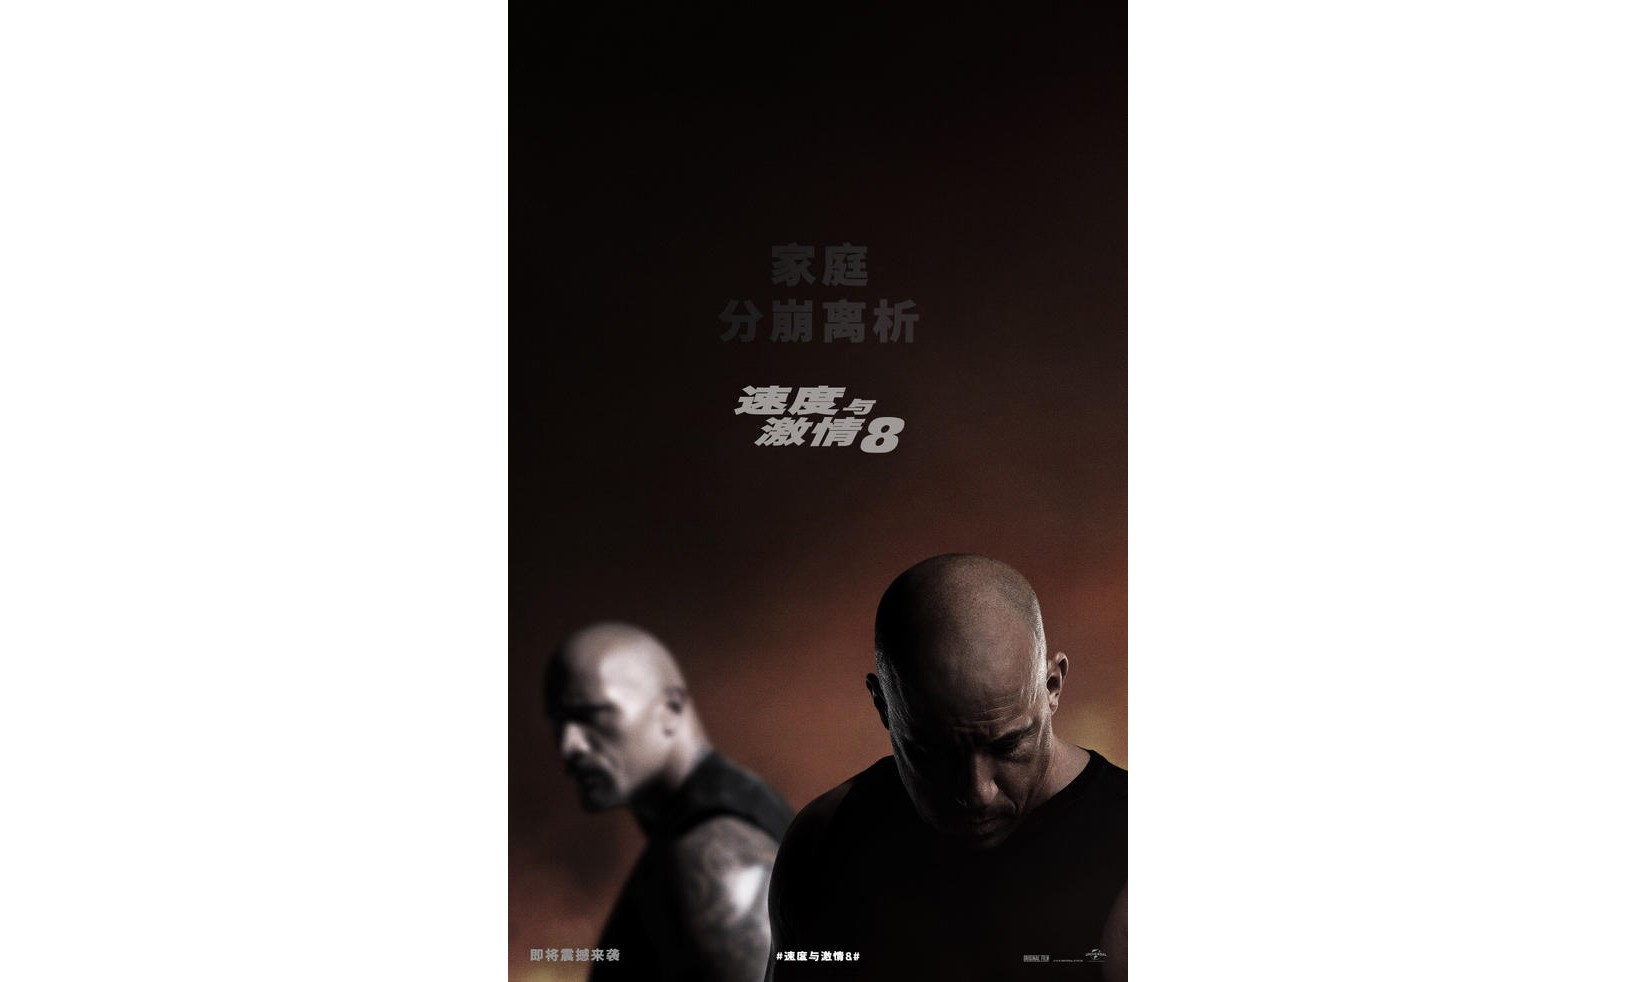 多米尼克 “黑化”？《速度与激情8》中文预告片正式发布